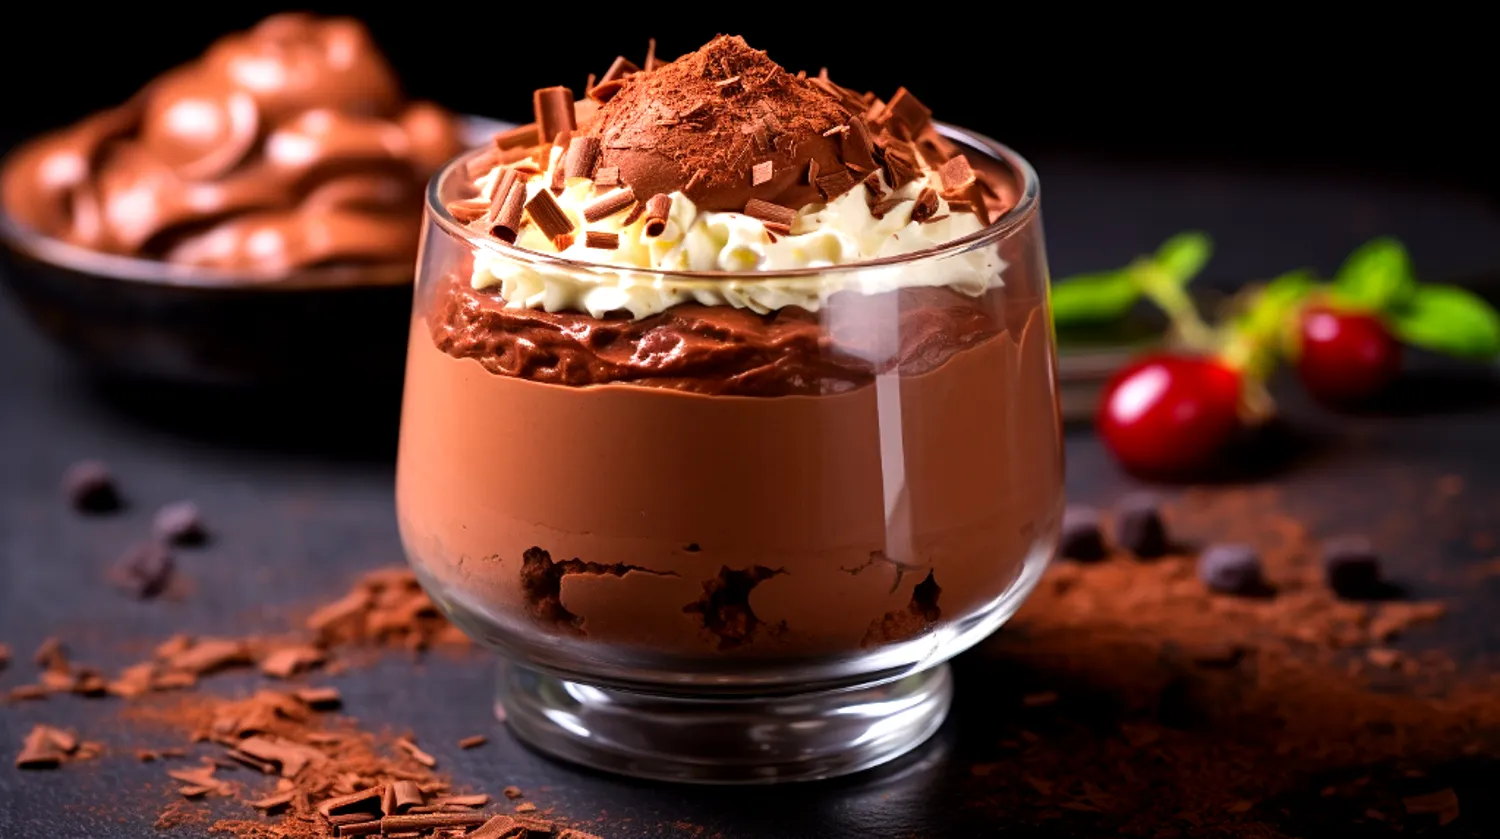 Bolo de chocolate amargo é dica acessível e saborosa; aprenda a